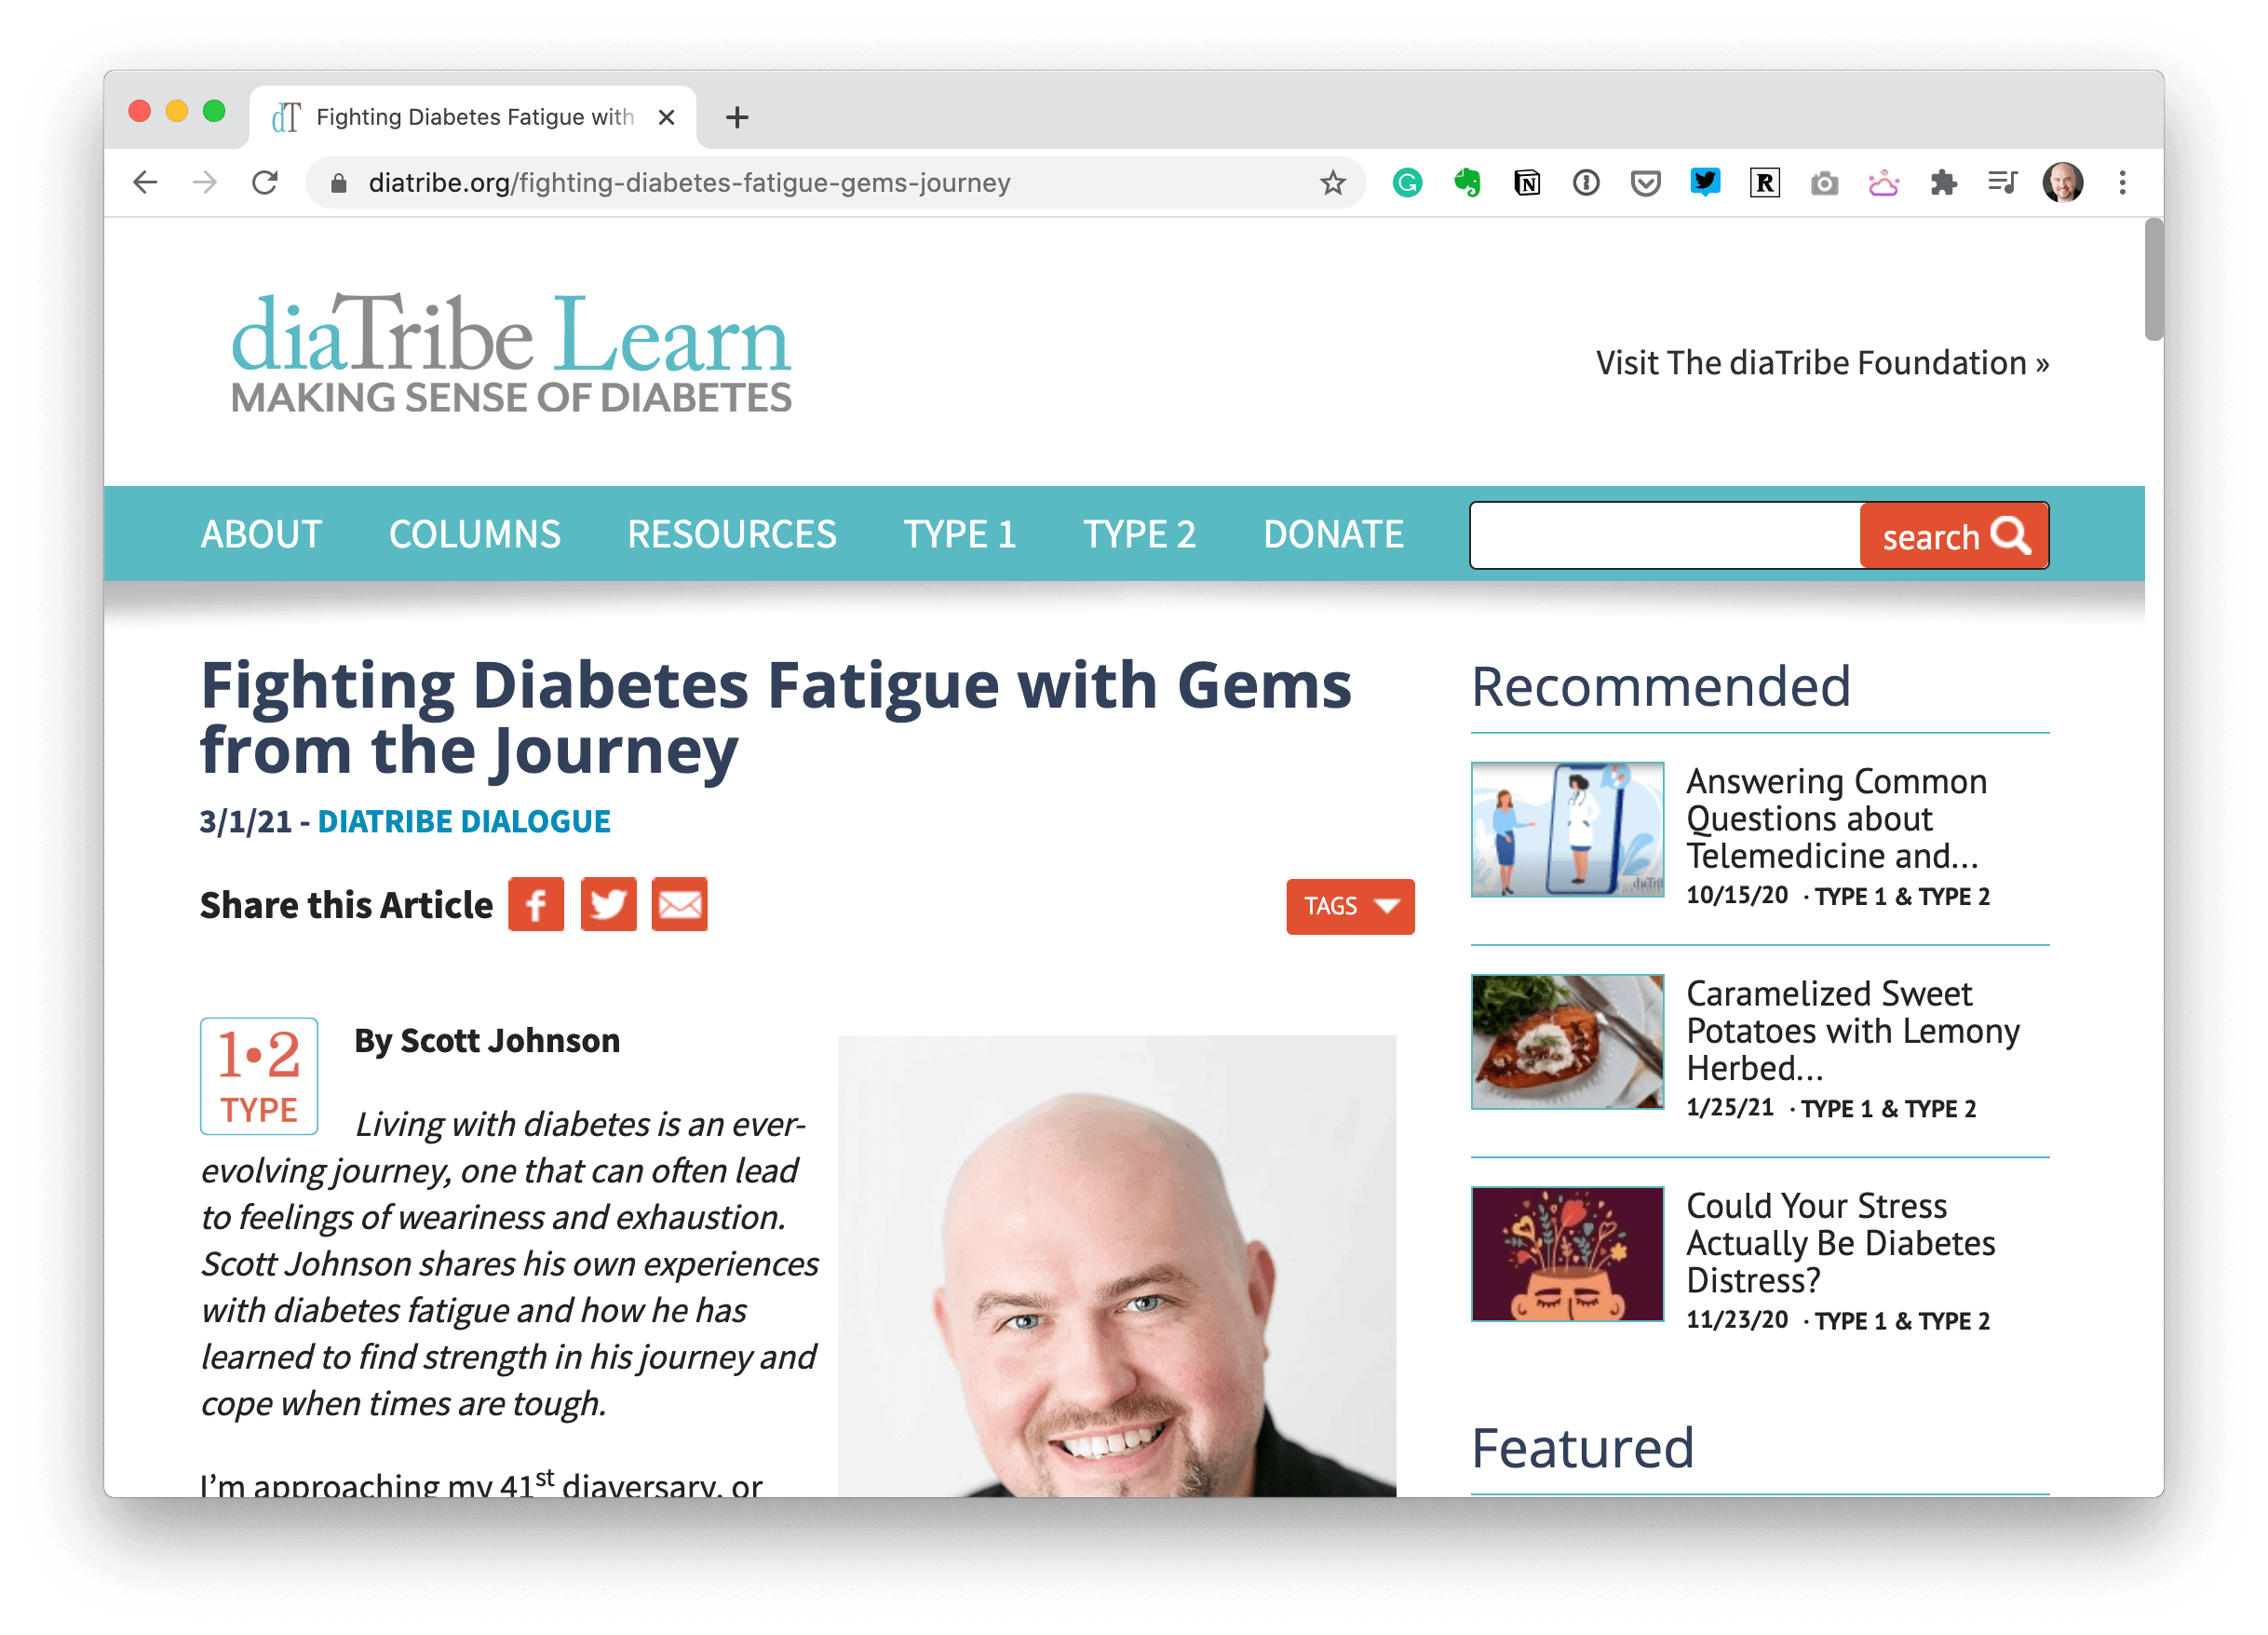 Scott's Article on diaTribe.org